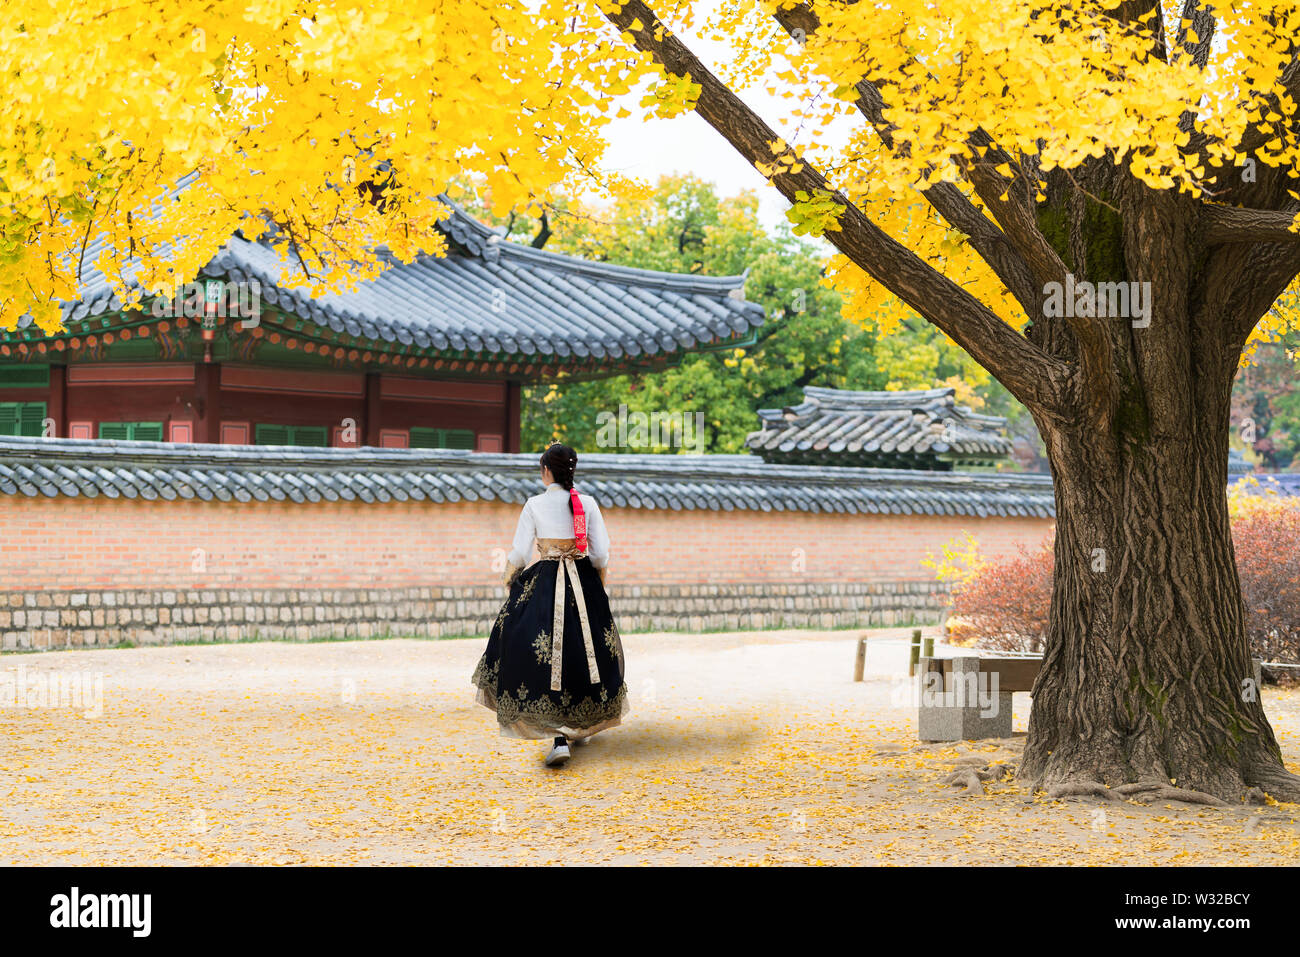 Asiatische koreanische Frau gekleidet Hanbok in traditioneller Kleidung wandern in Gyeongbokgung Palast im Herbst Saison in Seoul, Südkorea. Stockfoto